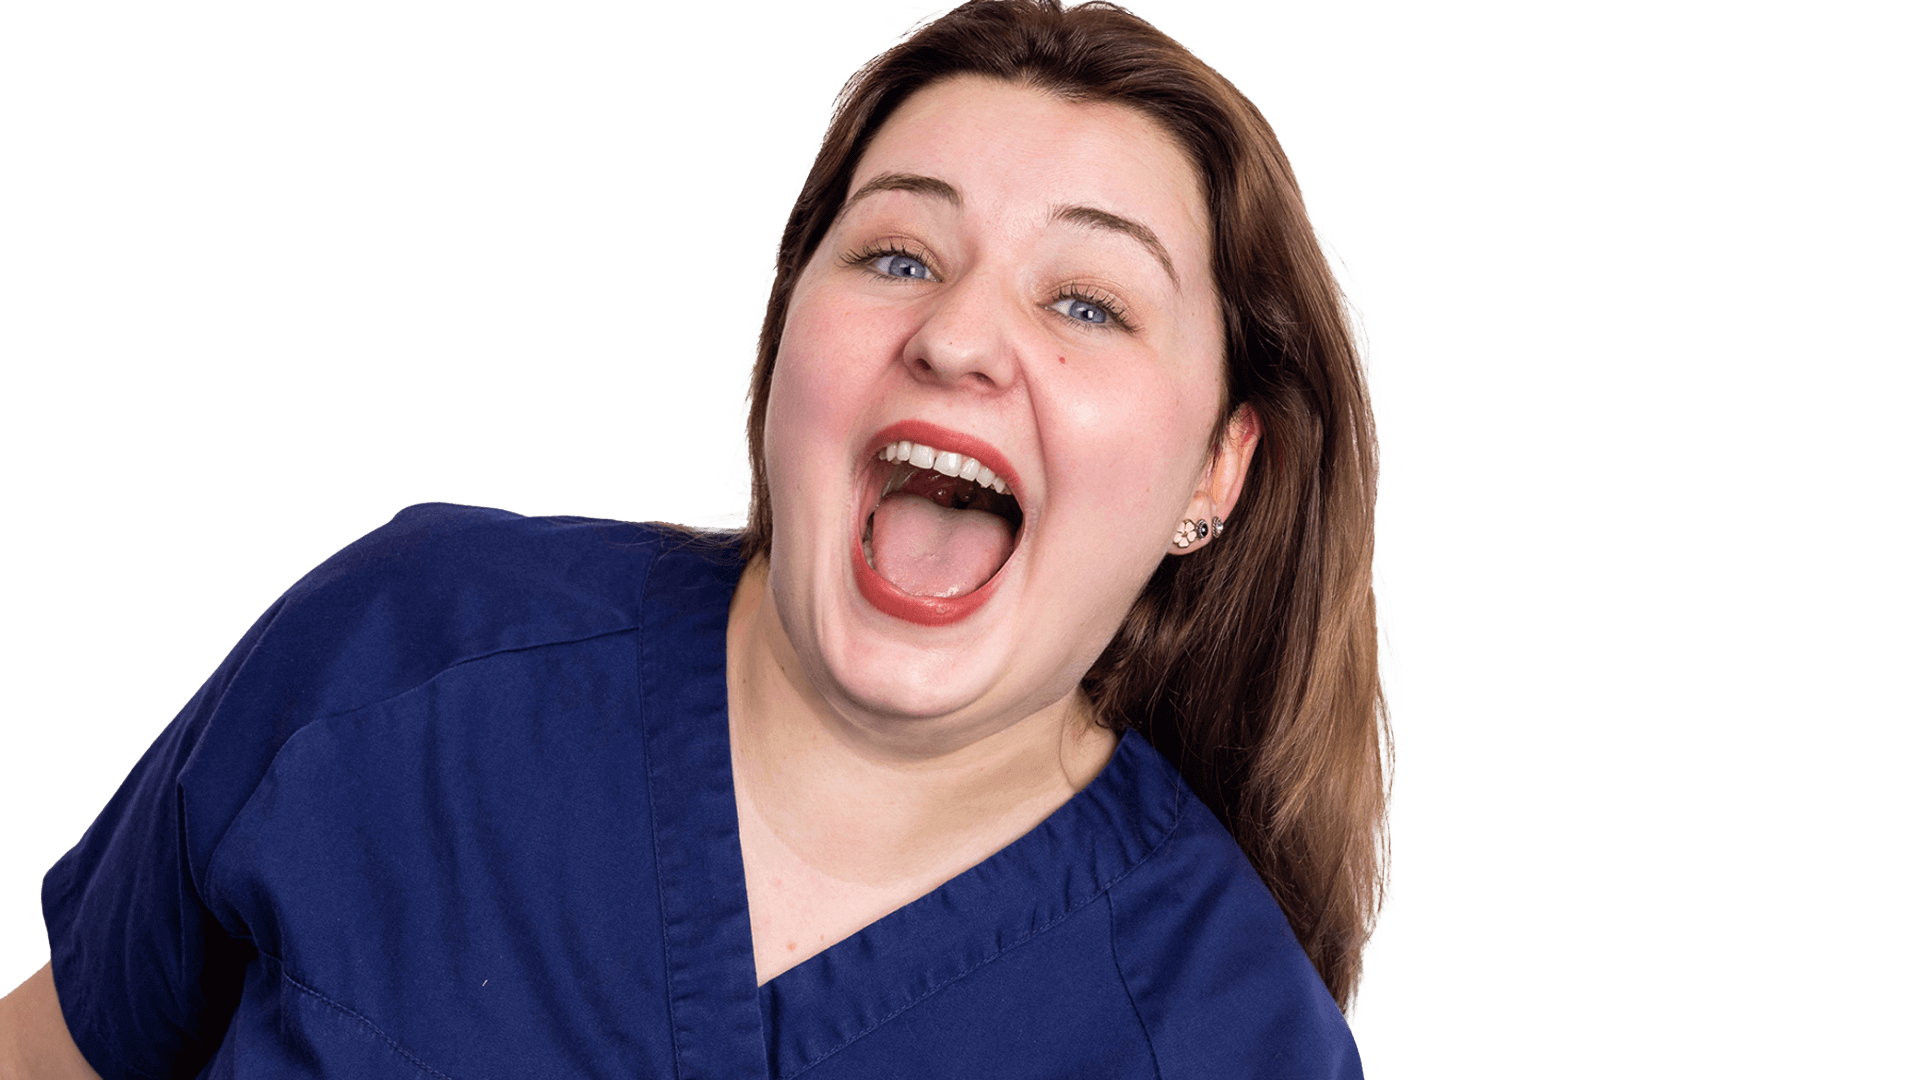 Die Zahnmedizinische Prophylaxeassistentin Annika lacht in die Kamera und ihr Mund formt dabei das "O" in WoW